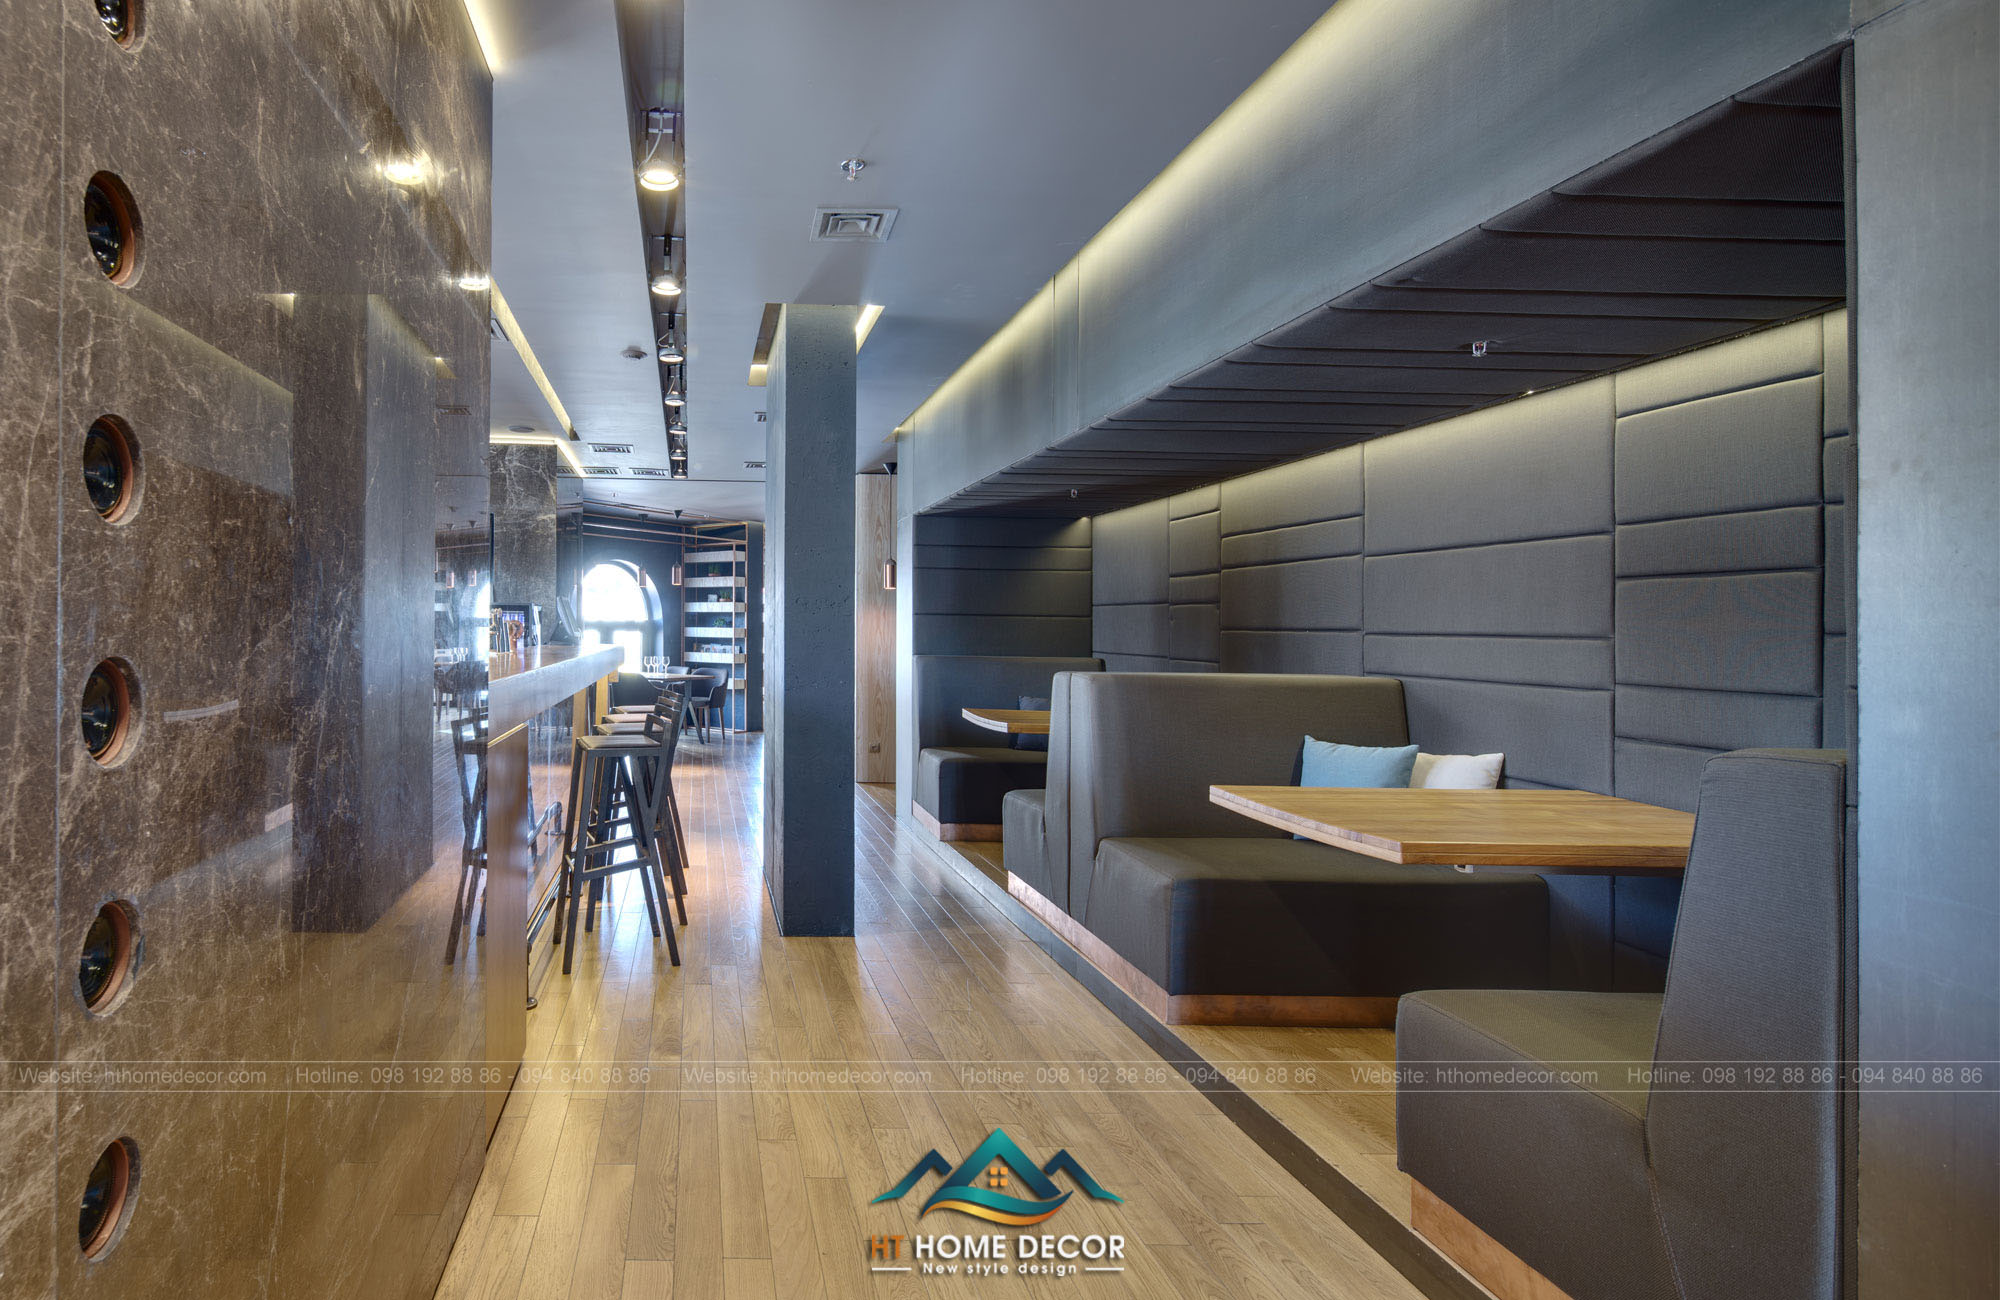 Sử dụng nền gỗ để thiết kế cho nhà hàng, giúp không gian toát lên được sự giản dị giữa không gian sang trọng.